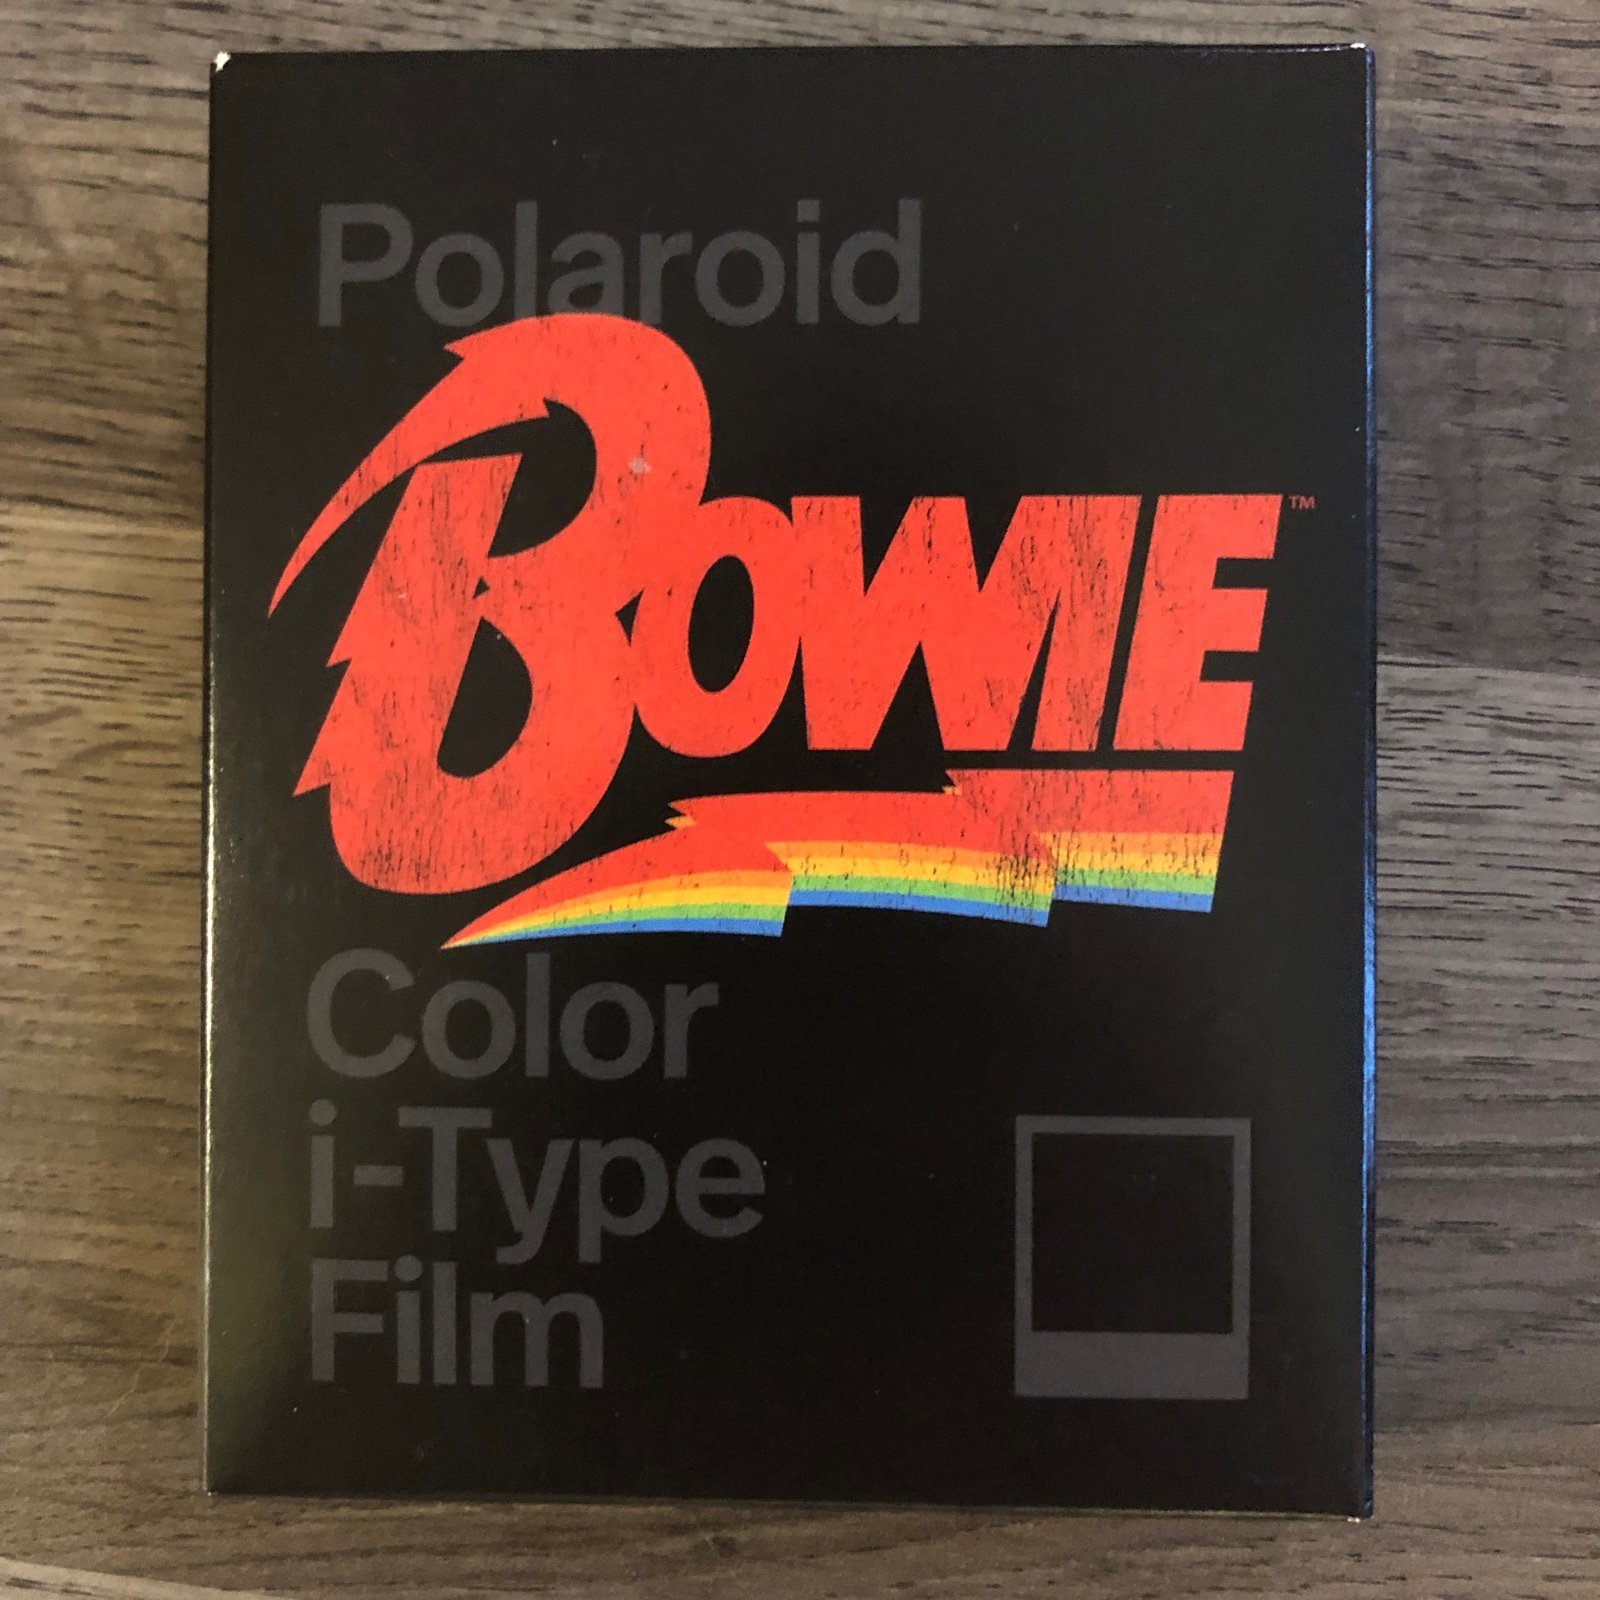 Polaroid David Bowie I-type Film- 8 Frames EJ0C4X1xG